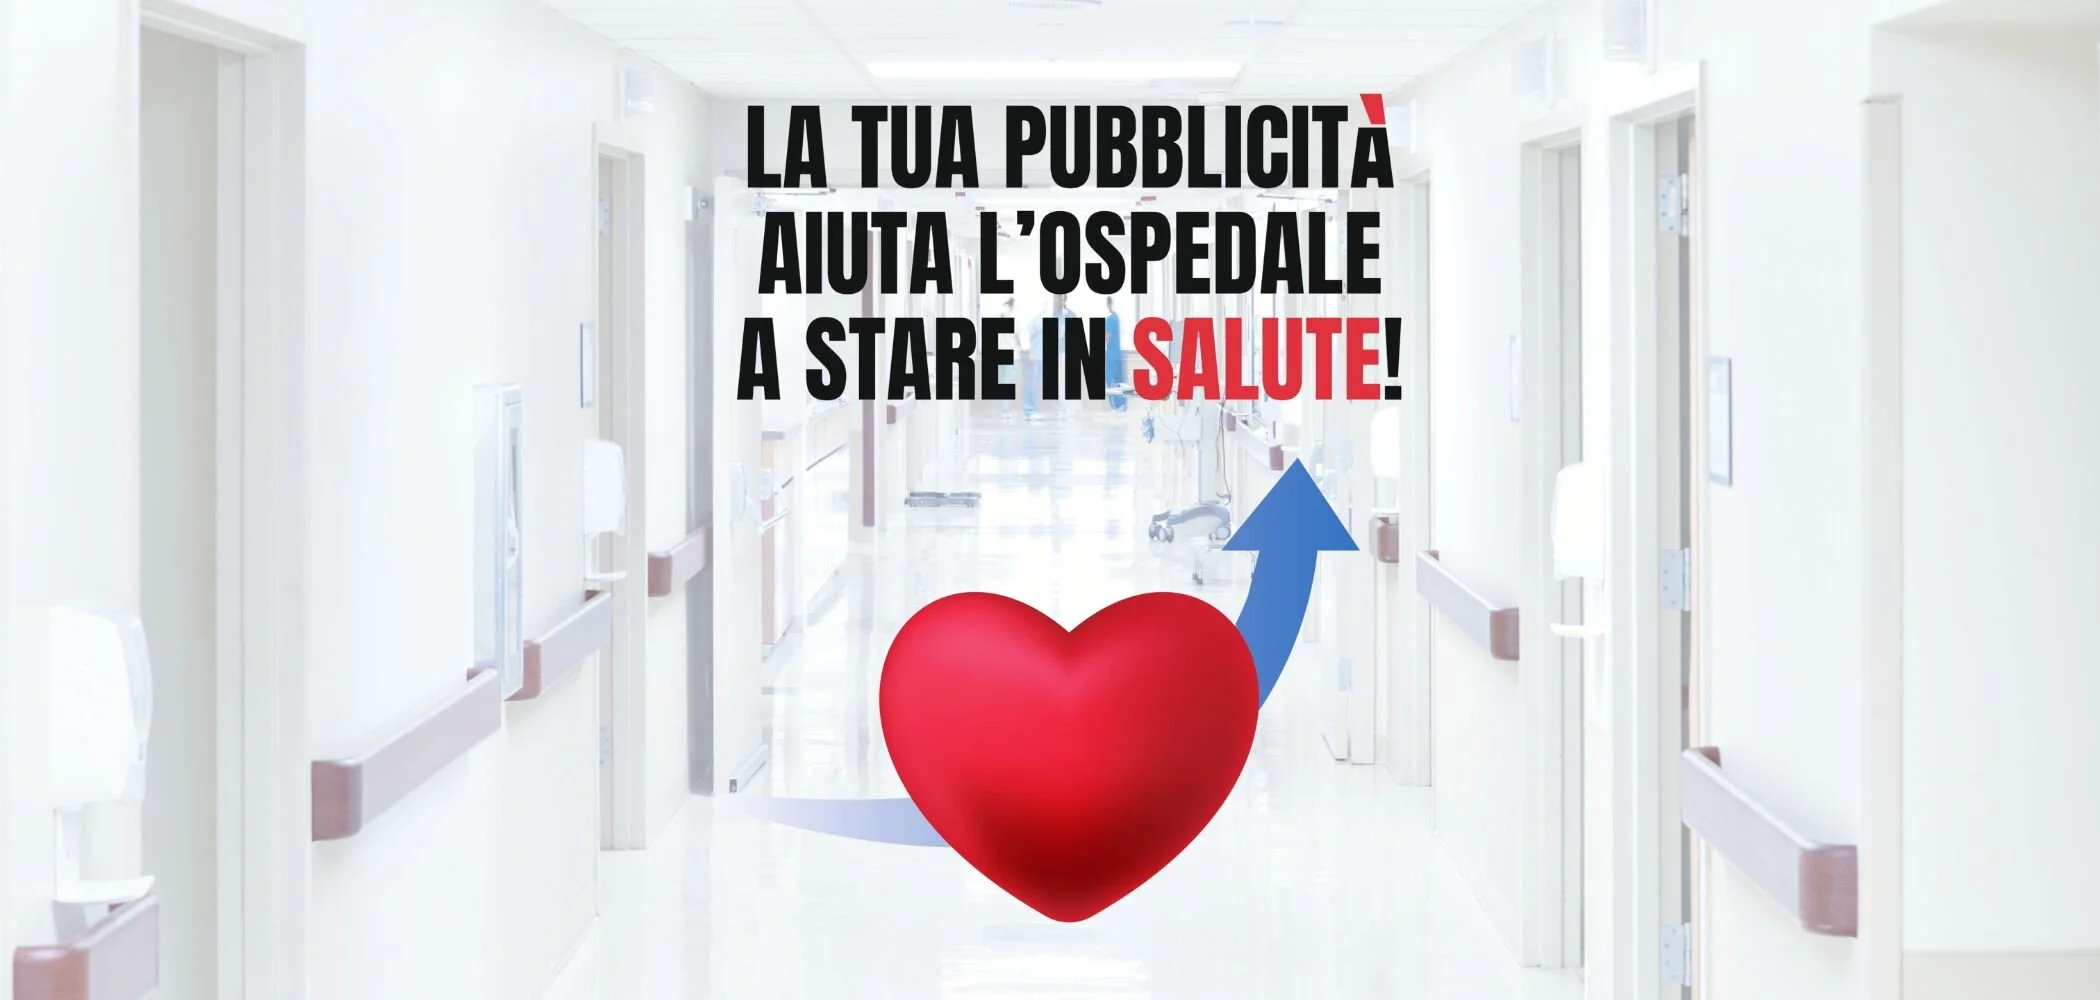 Ospedale Pisa pubblicità